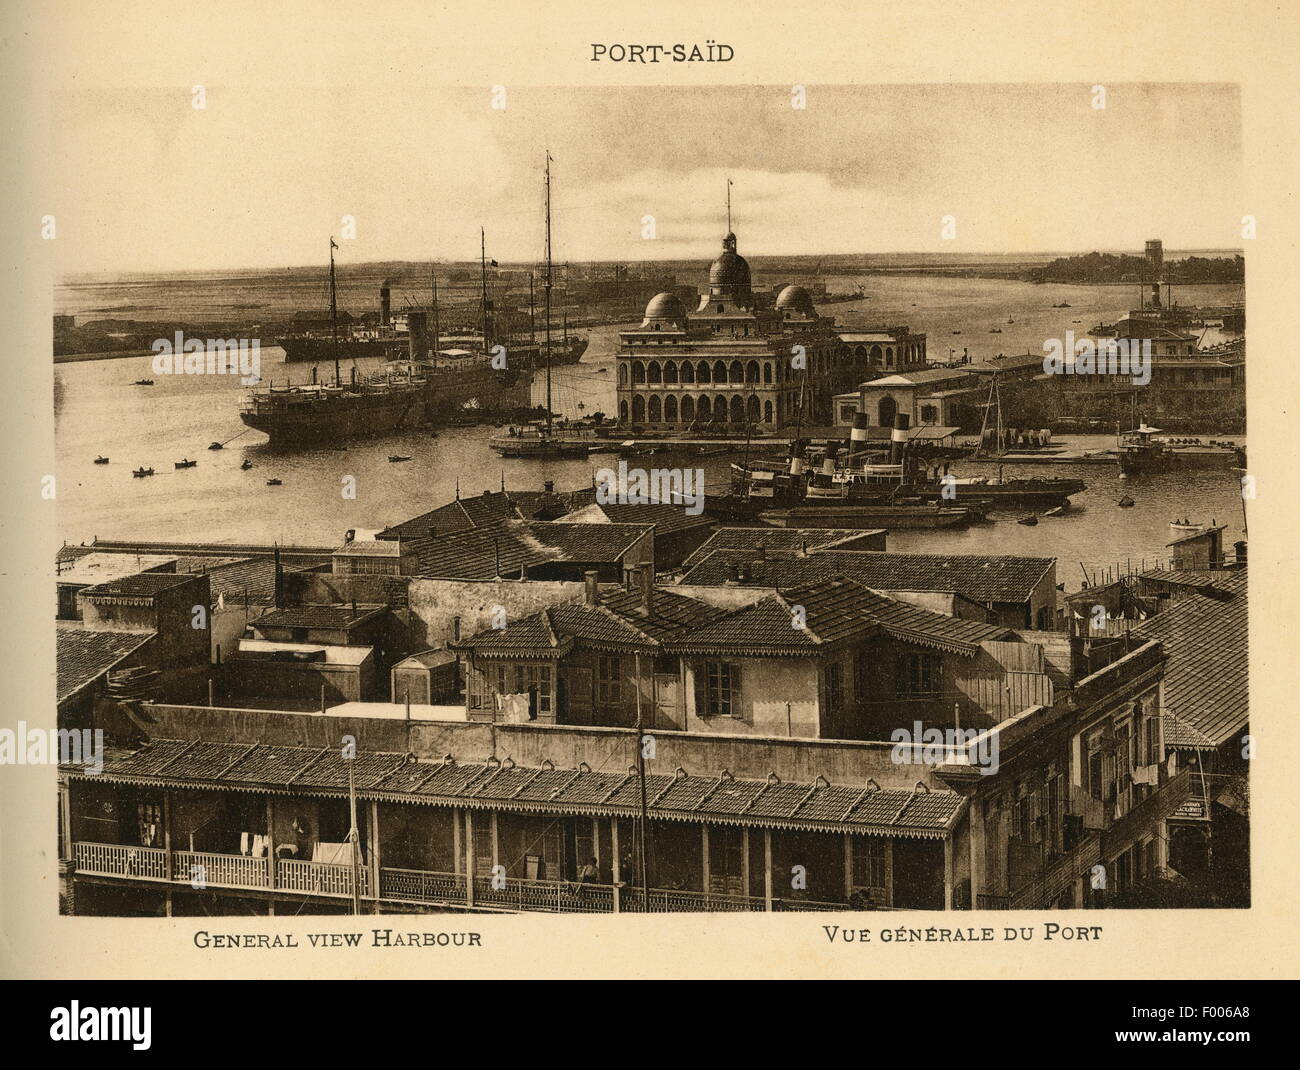 Port Said, Egitto - 1900S - una cartolina del Canale di Suez città alla foce del canale di Suez sul Mare Mediterraneo, una vista del porto. COPYRIGHT collezione fotografica di Barry Iverson Foto Stock